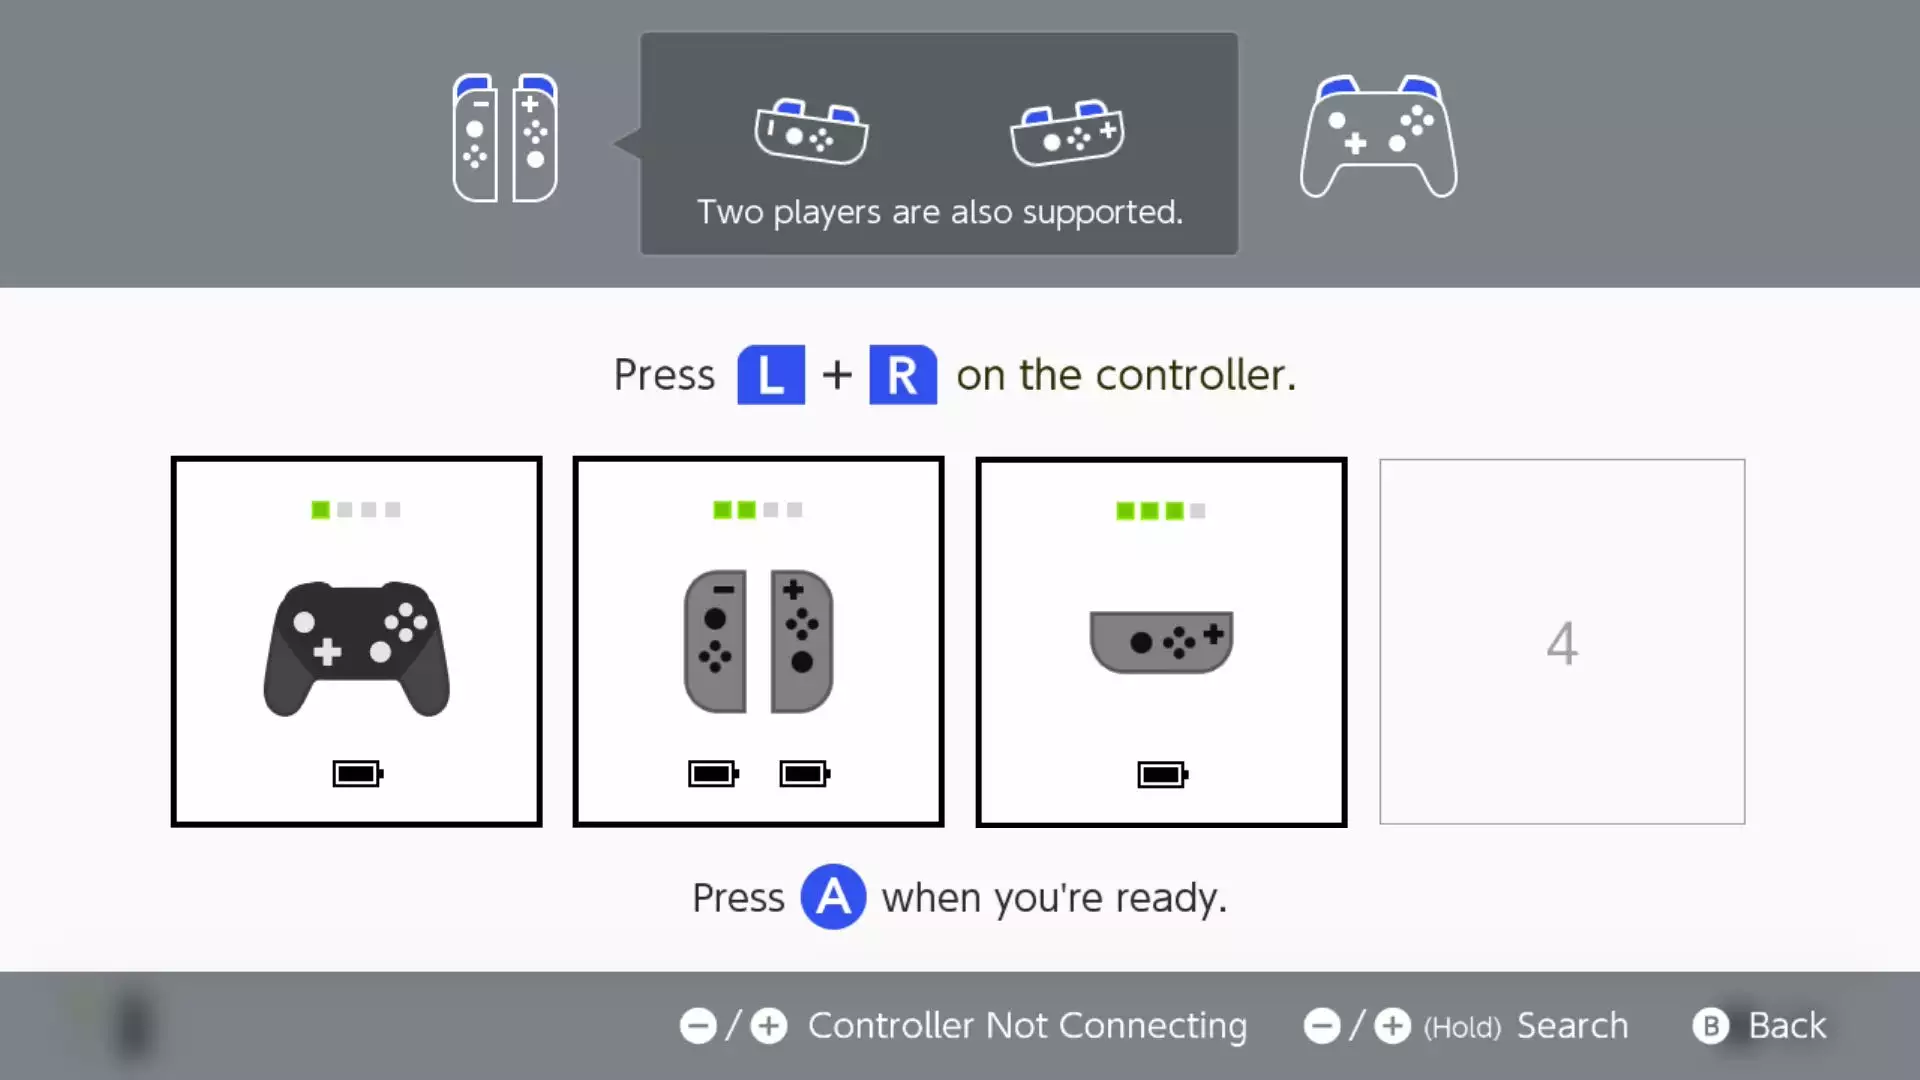 是的，Nintendo Switch 具有蓝牙功能 - 这是连接耳机或新控制器的方法